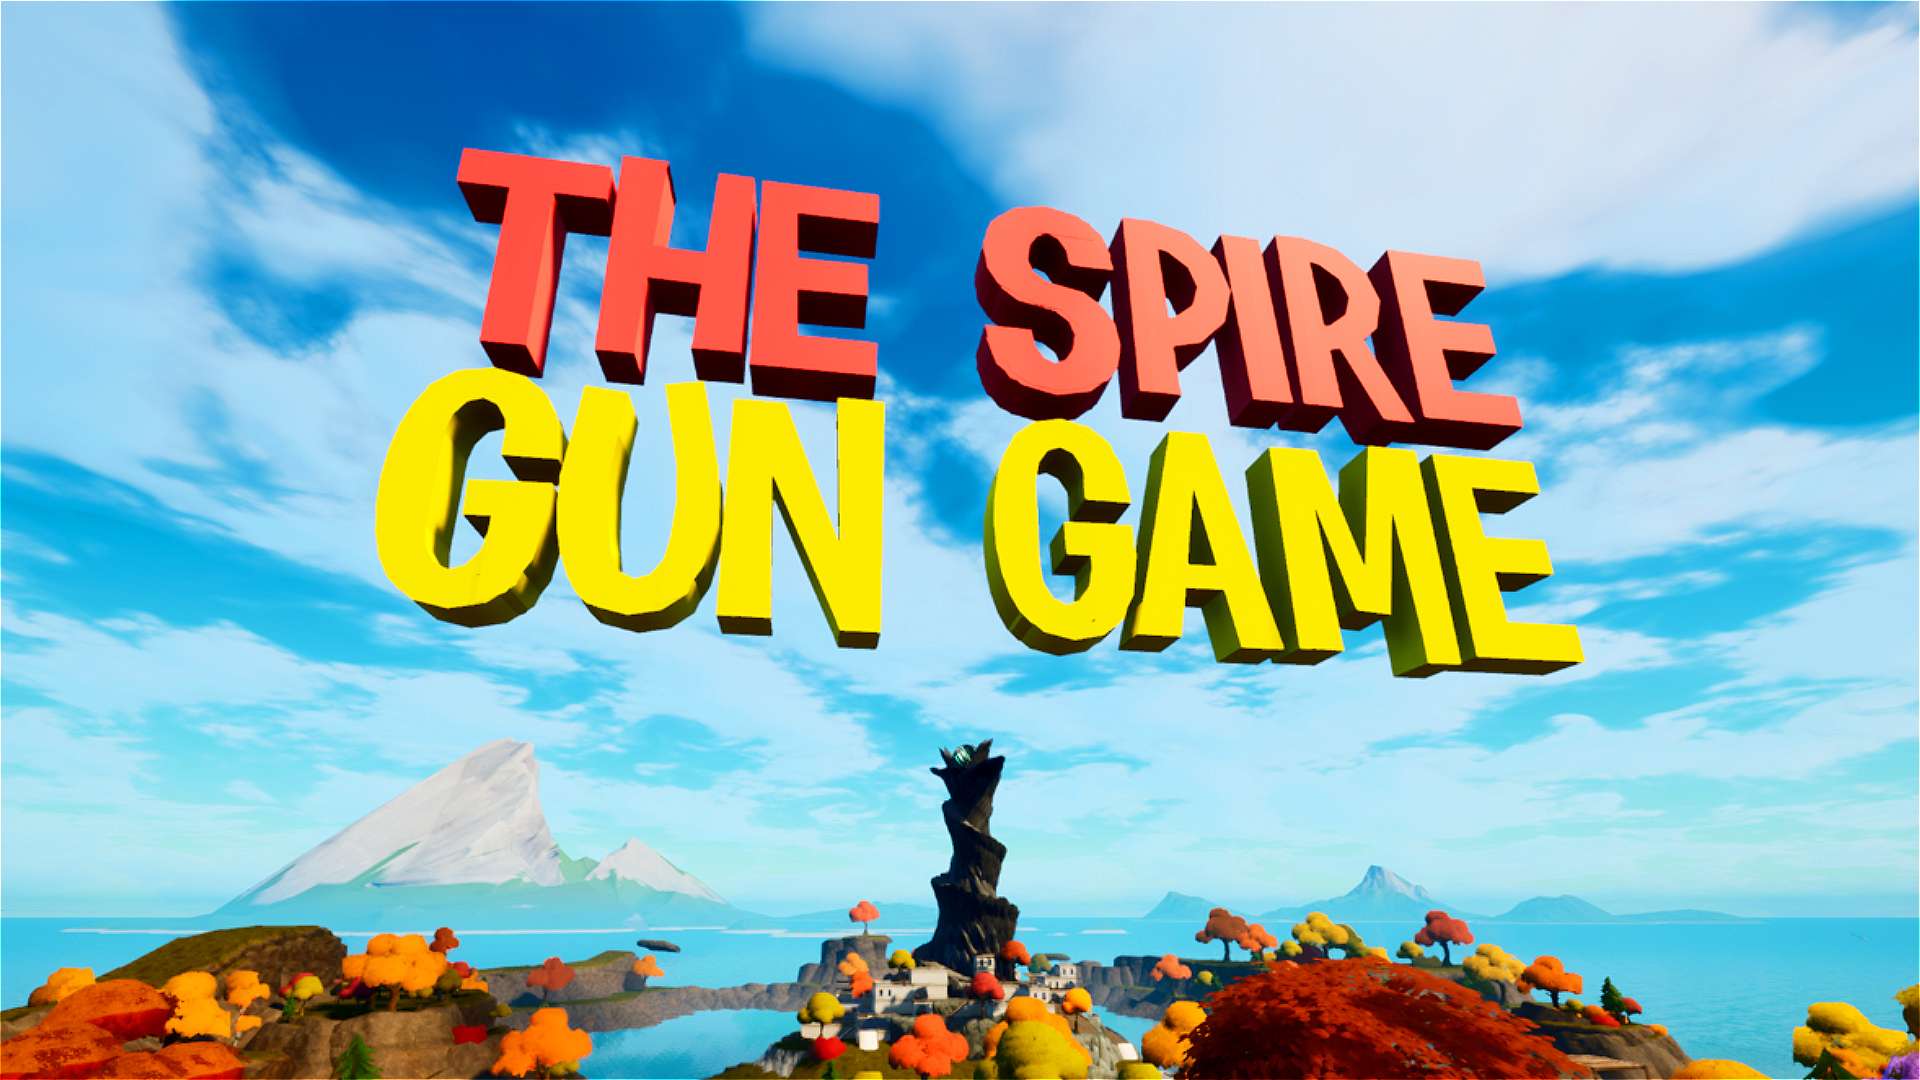 THE SPIRE - GUN GAME / KALEL